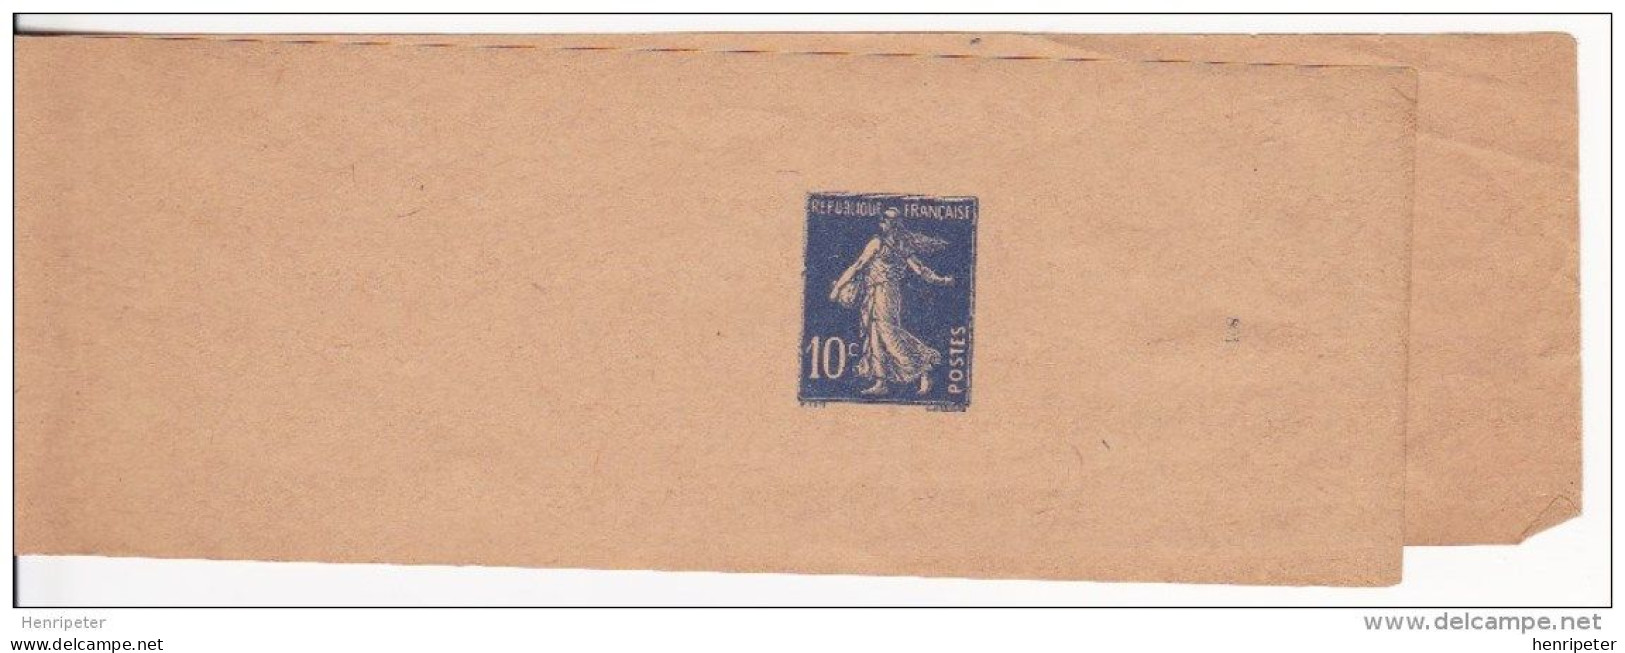 279-BJ1 (Yvert) Neuf** Sur Bande Pour Journaux - Entier Postal Type Semeuse à Fond Plein - France 1932-37 - Bandas Para Periodicos